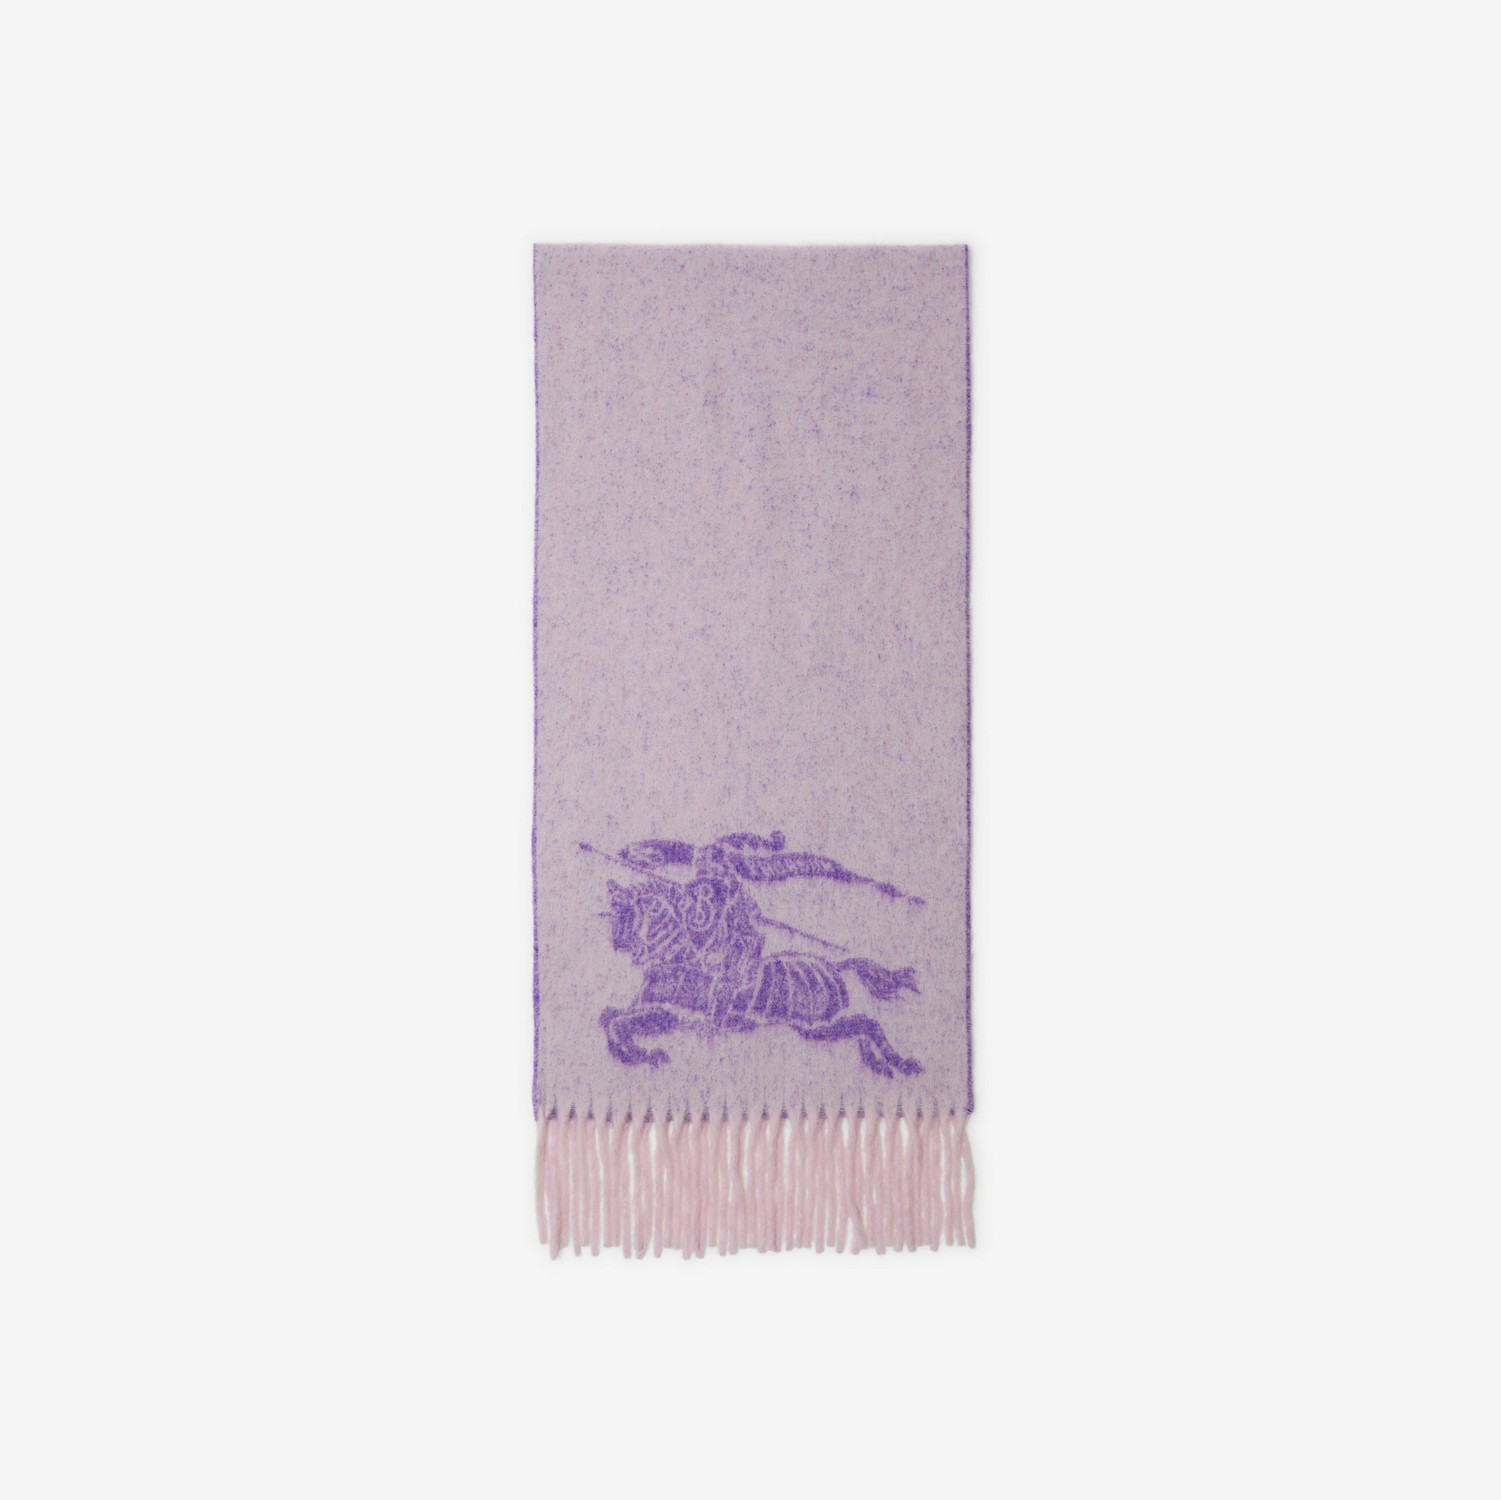 马术骑士徽标羊驼毛羊毛混纺围巾 (柔雾色) | Burberry® 博柏利官网